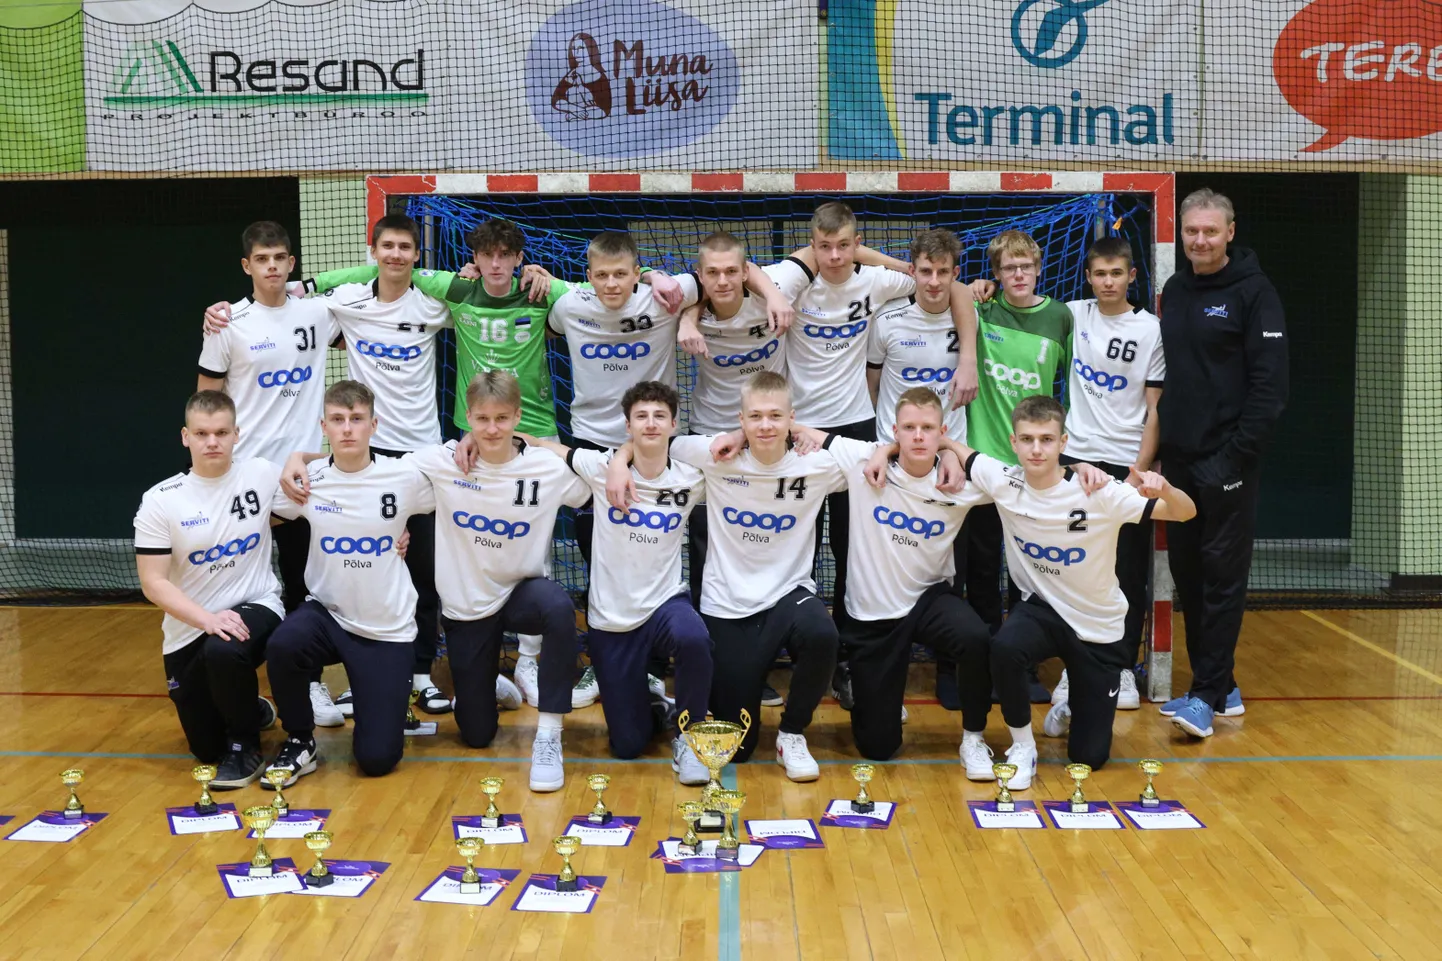 Põlva KPK/Põlva SK võistkond tuli Eesti karikavõitjaks noormeeste A-vanuseklassi käsipallis.